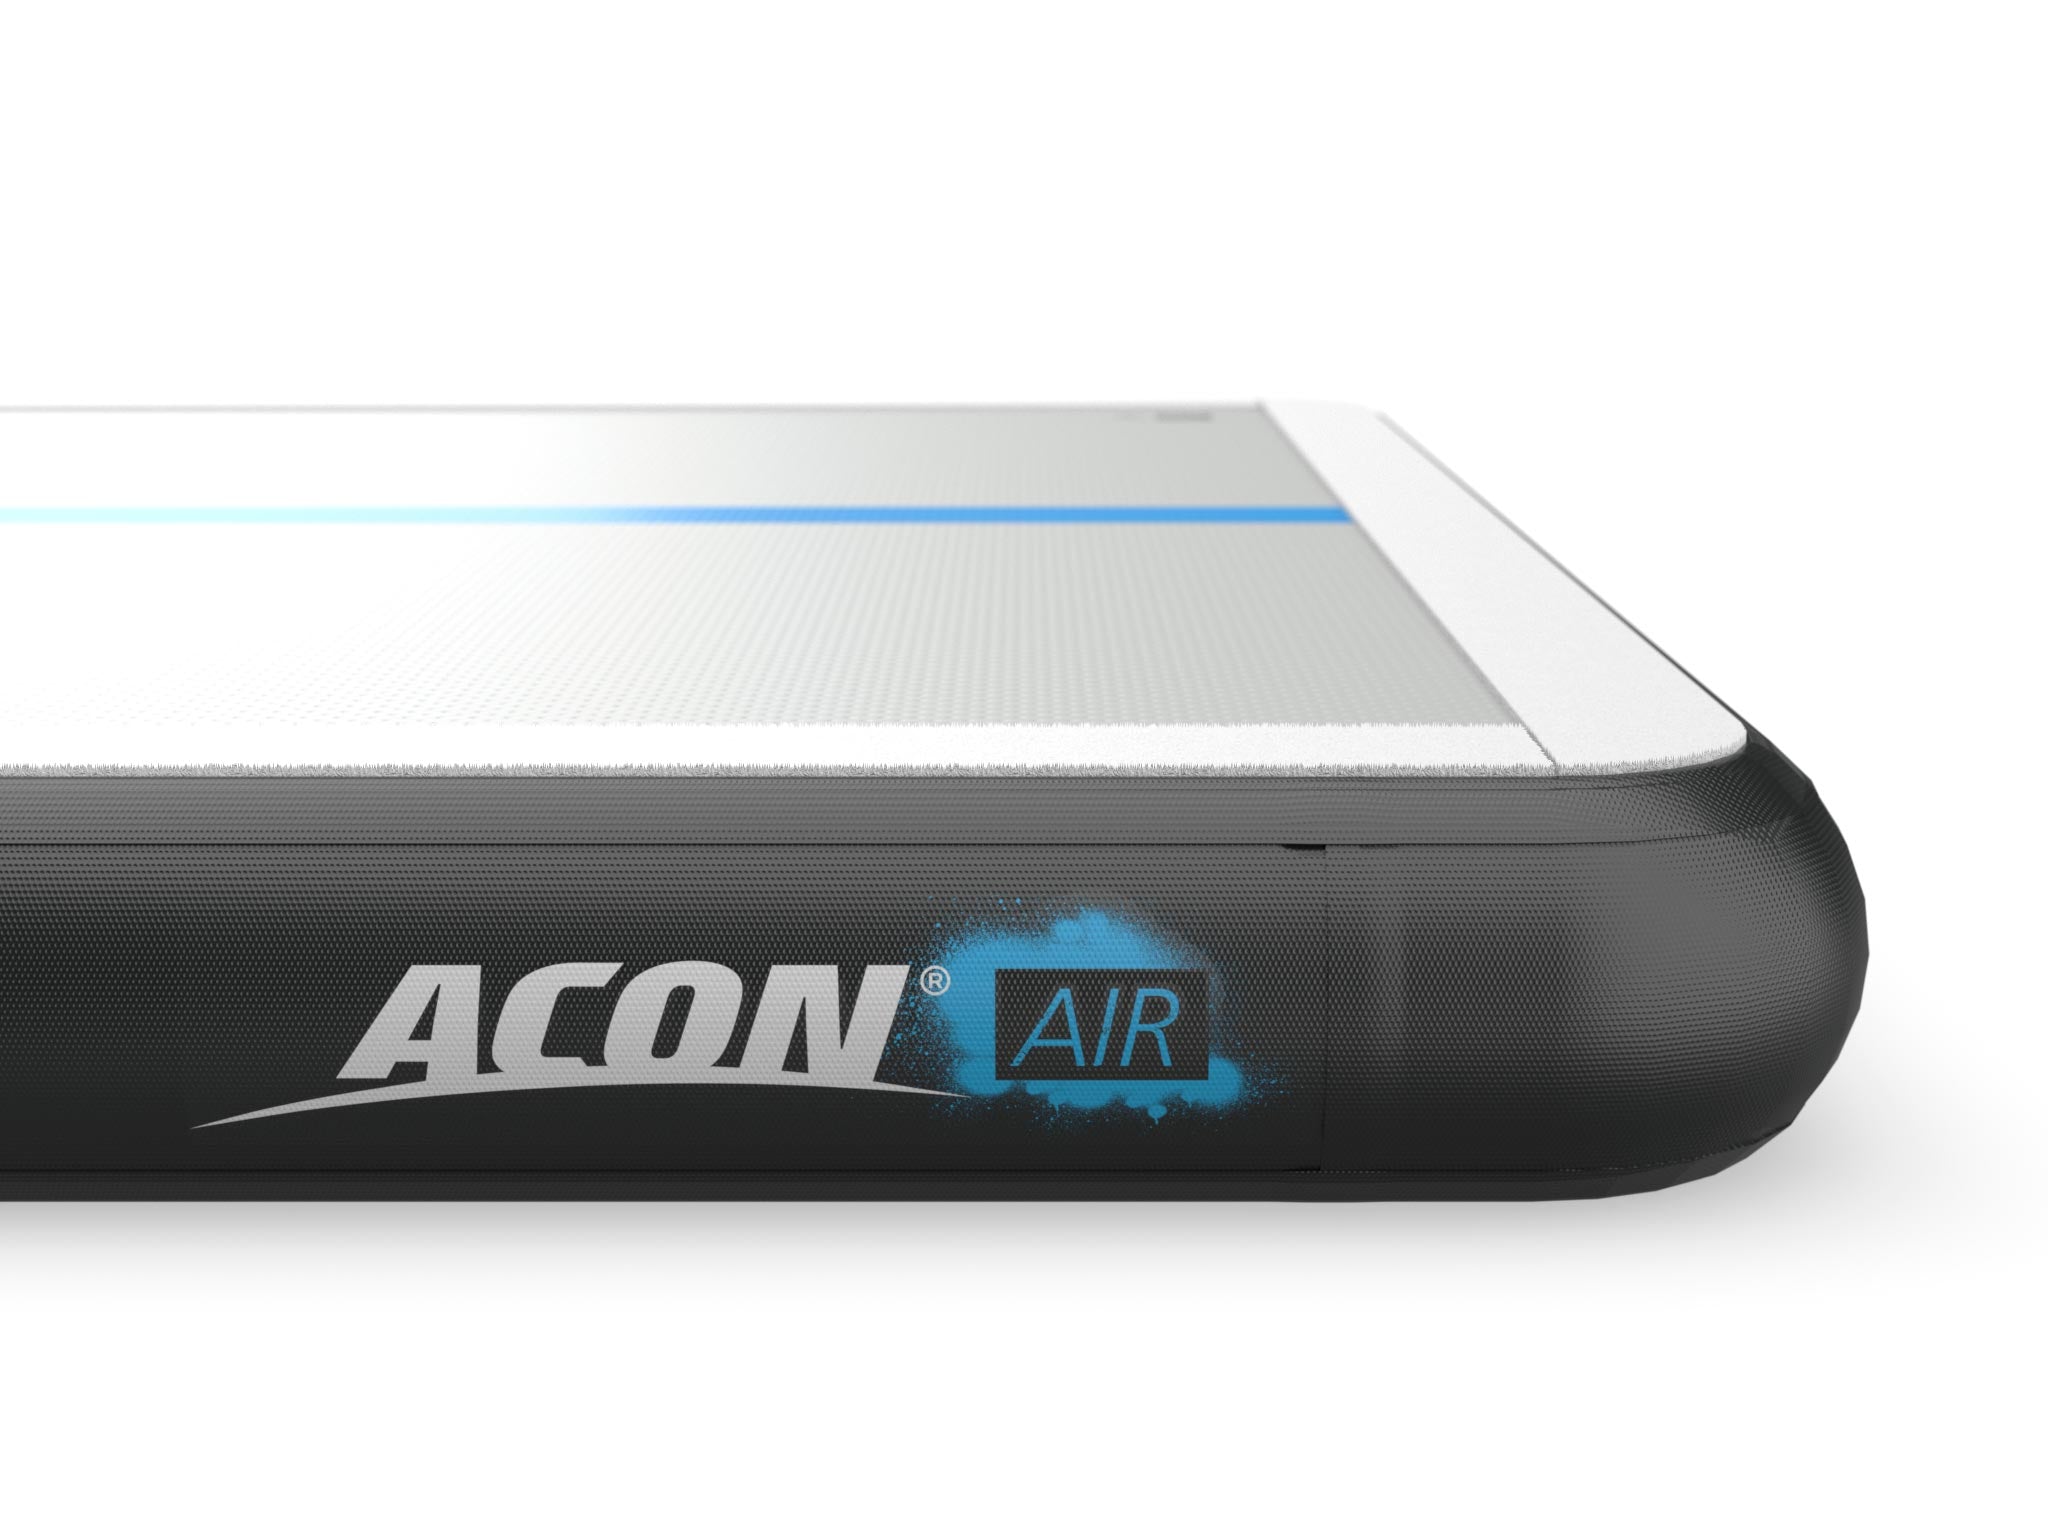 Grand modèle Acon Airtrack 12x2x0,2m - acon24.com - détail du logo ACON